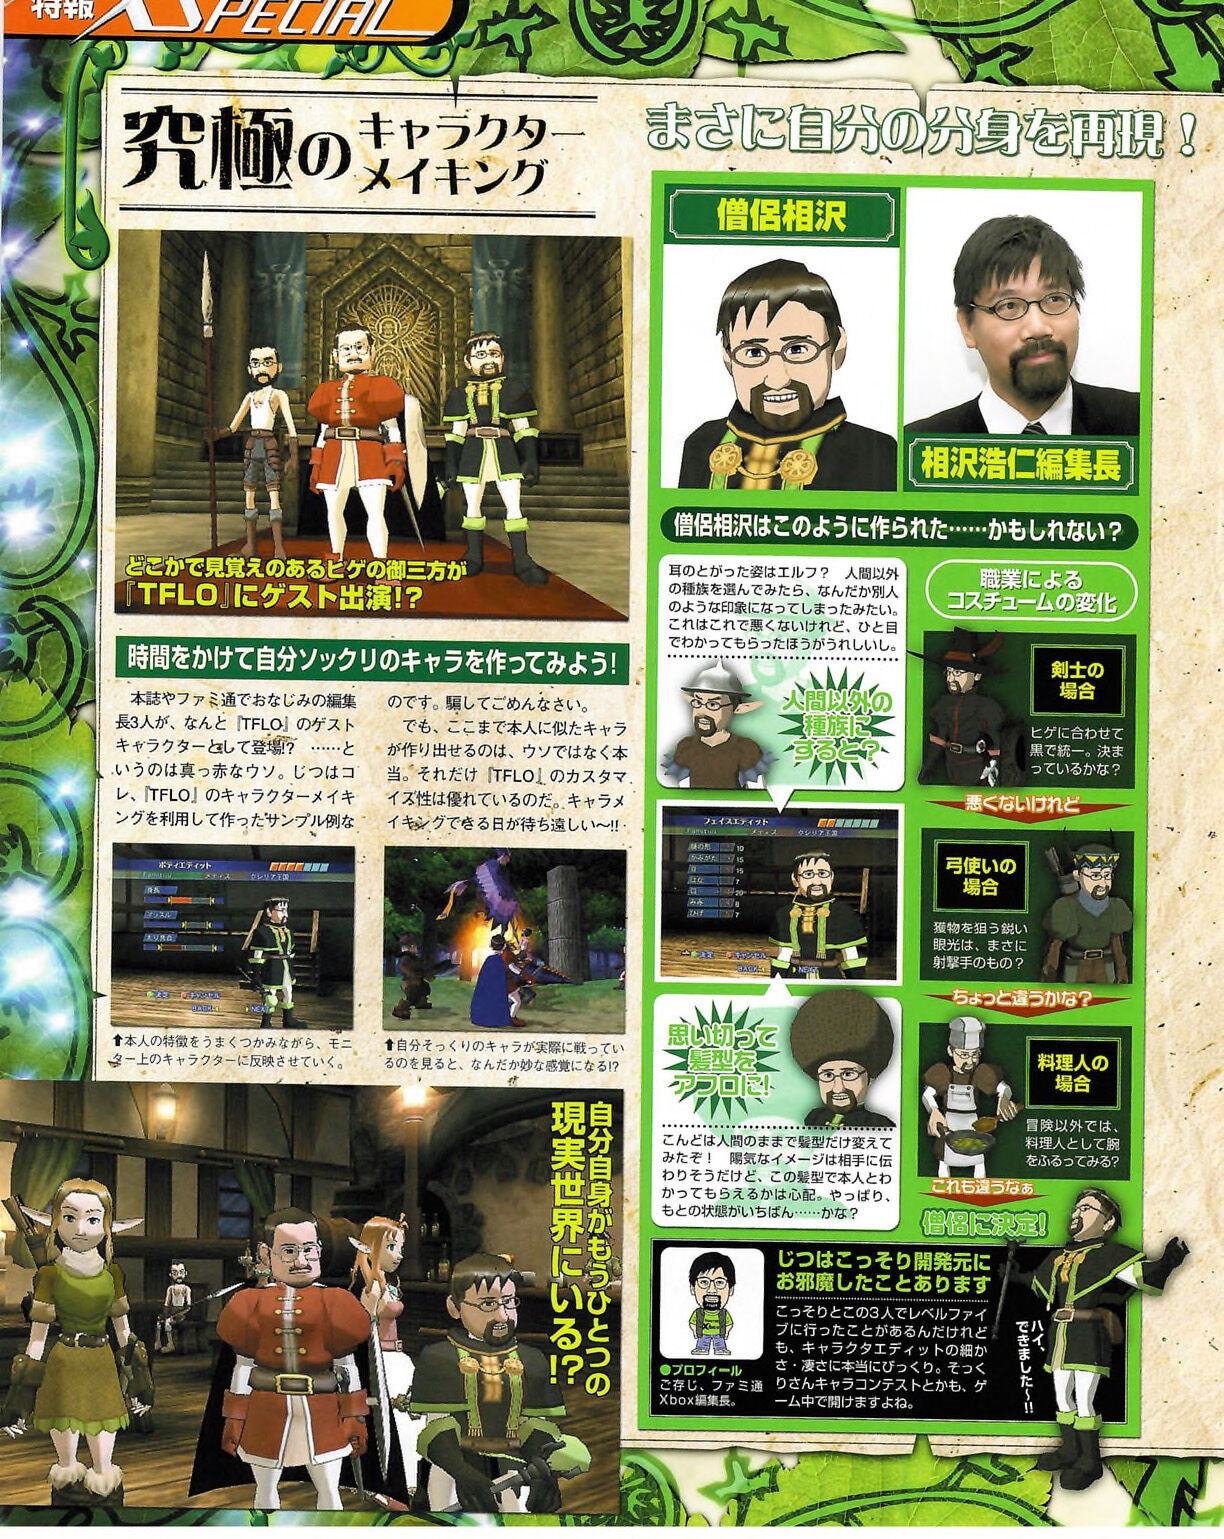 Famitsu_Xbox_2003-04_jp2 27